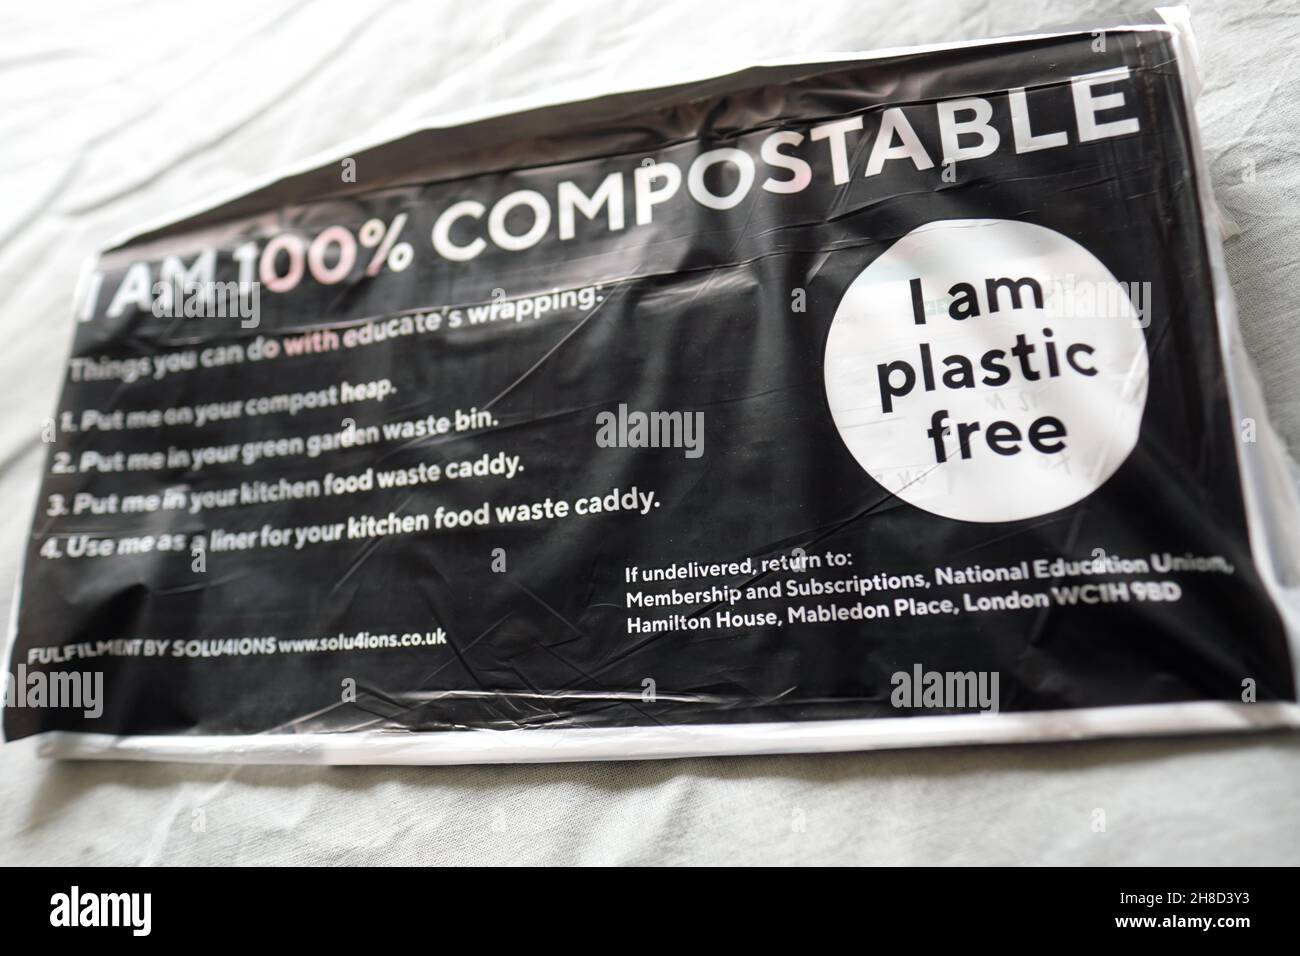 Envoltura de revistas compostable ecológica utilizada para enviar revistas a través del correo es libre de plástico - Reino Unido 2021 Foto de stock